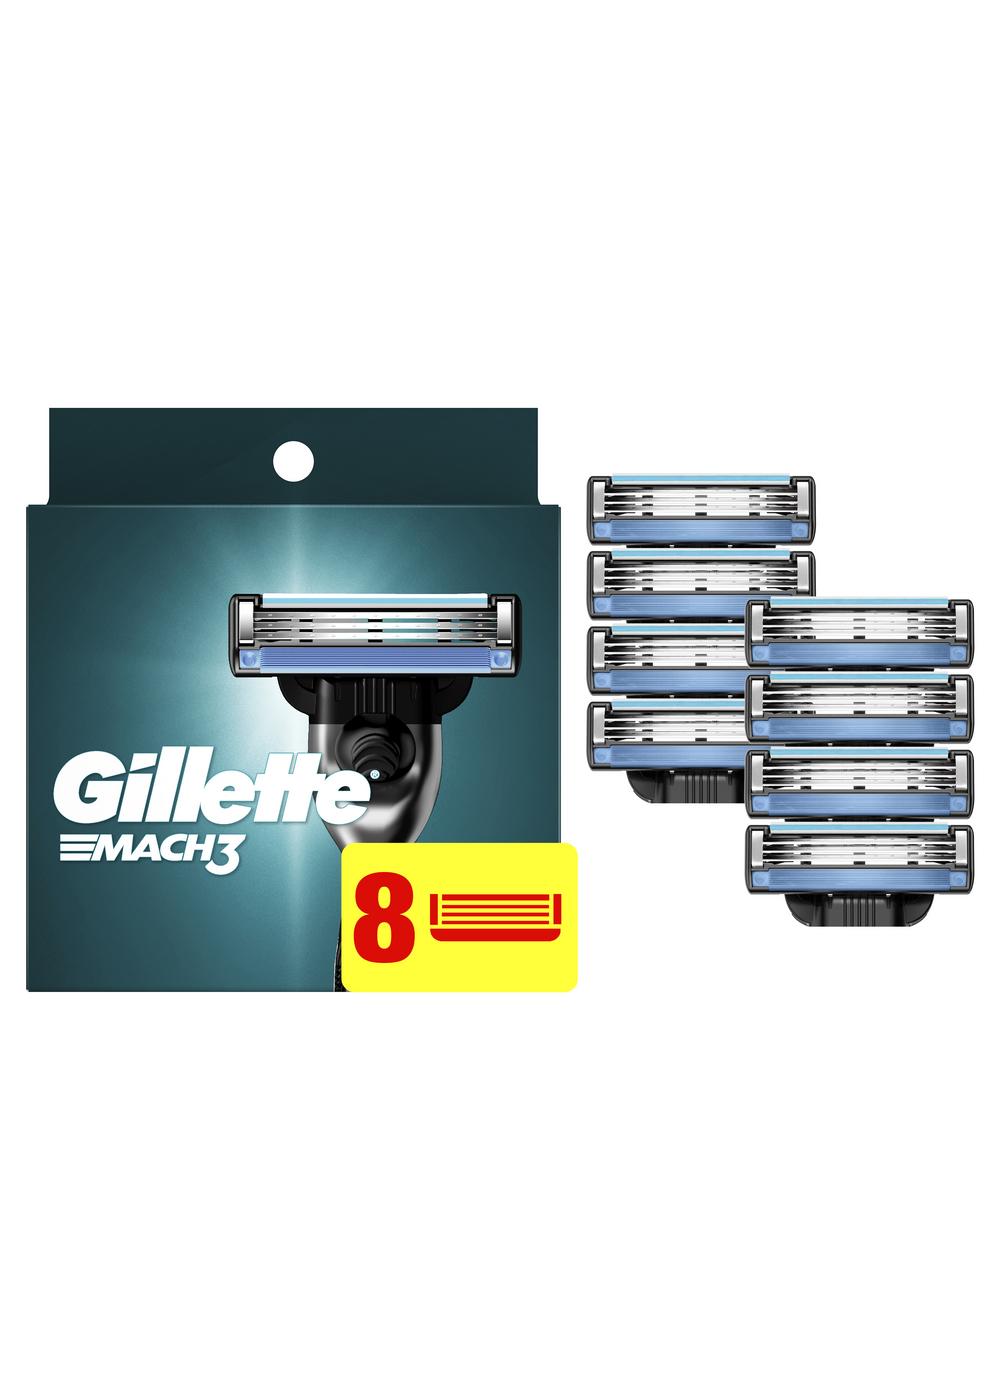 Gillette Mach3 Razor Blade Refills; image 4 of 11